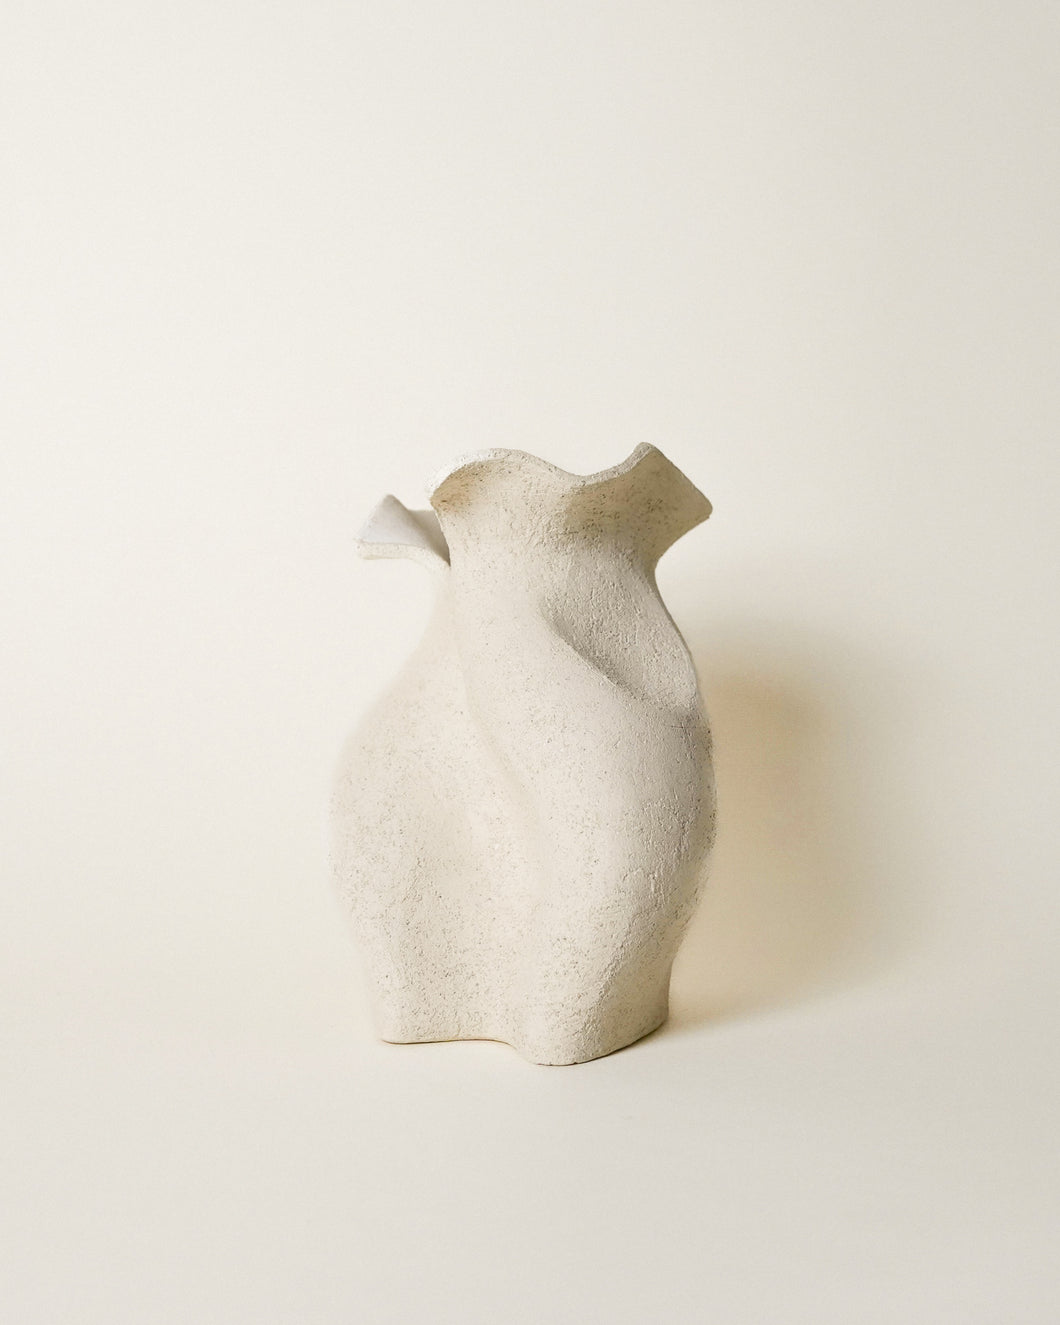 Snapdragon Vase by Doris Josovitz of Lost Quarry